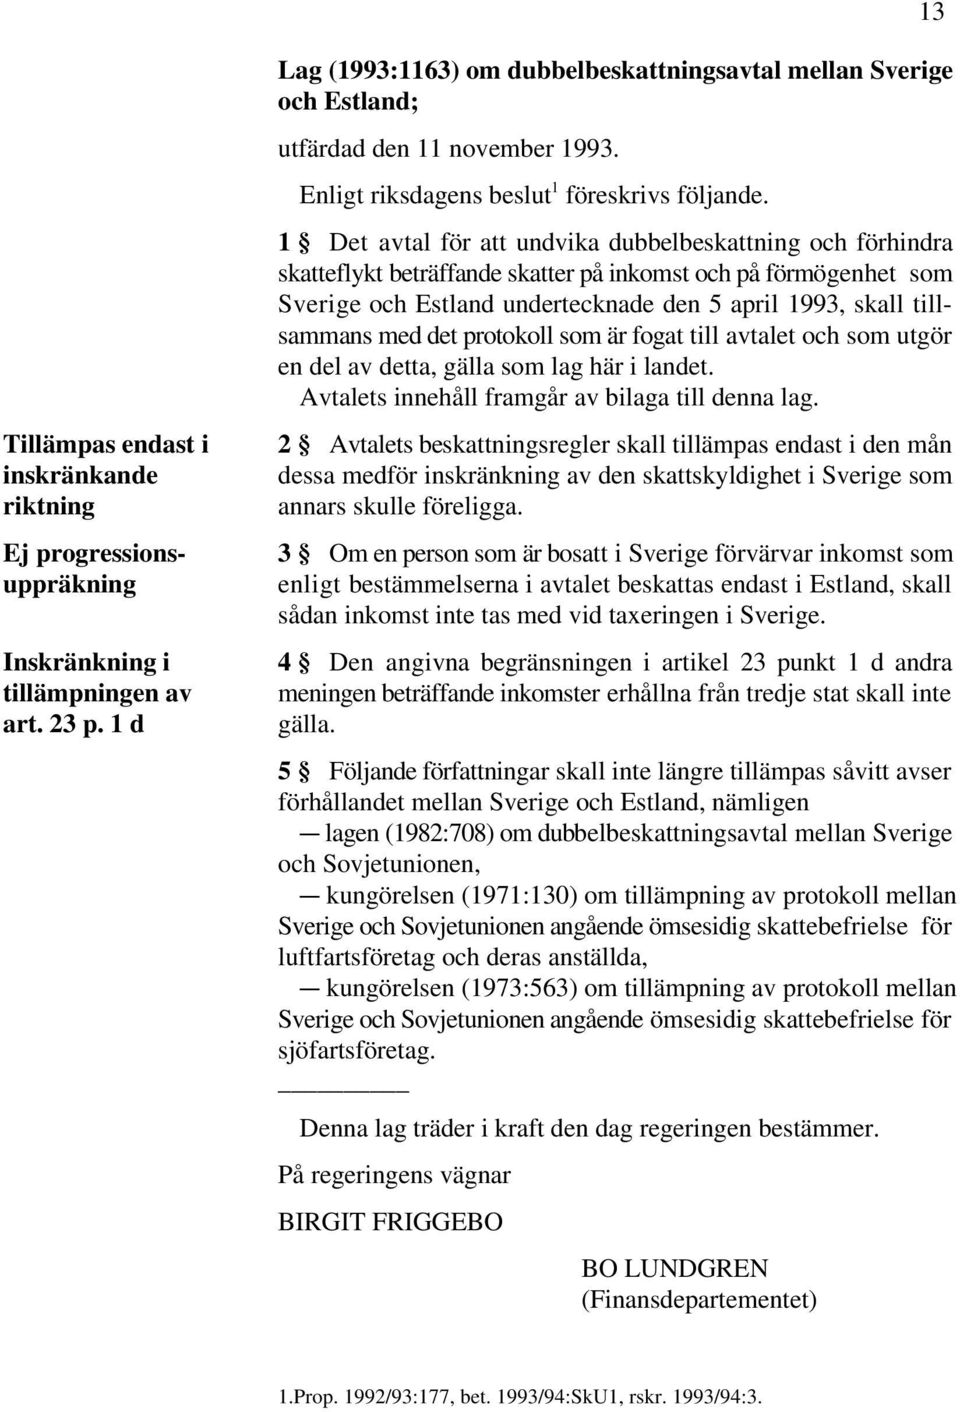 1 Det avtal för att undvika dubbelbeskattning och förhindra skatteflykt beträffande skatter på inkomst och på förmögenhet som Sverige och Estland undertecknade den 5 april 1993, skall tillsammans med